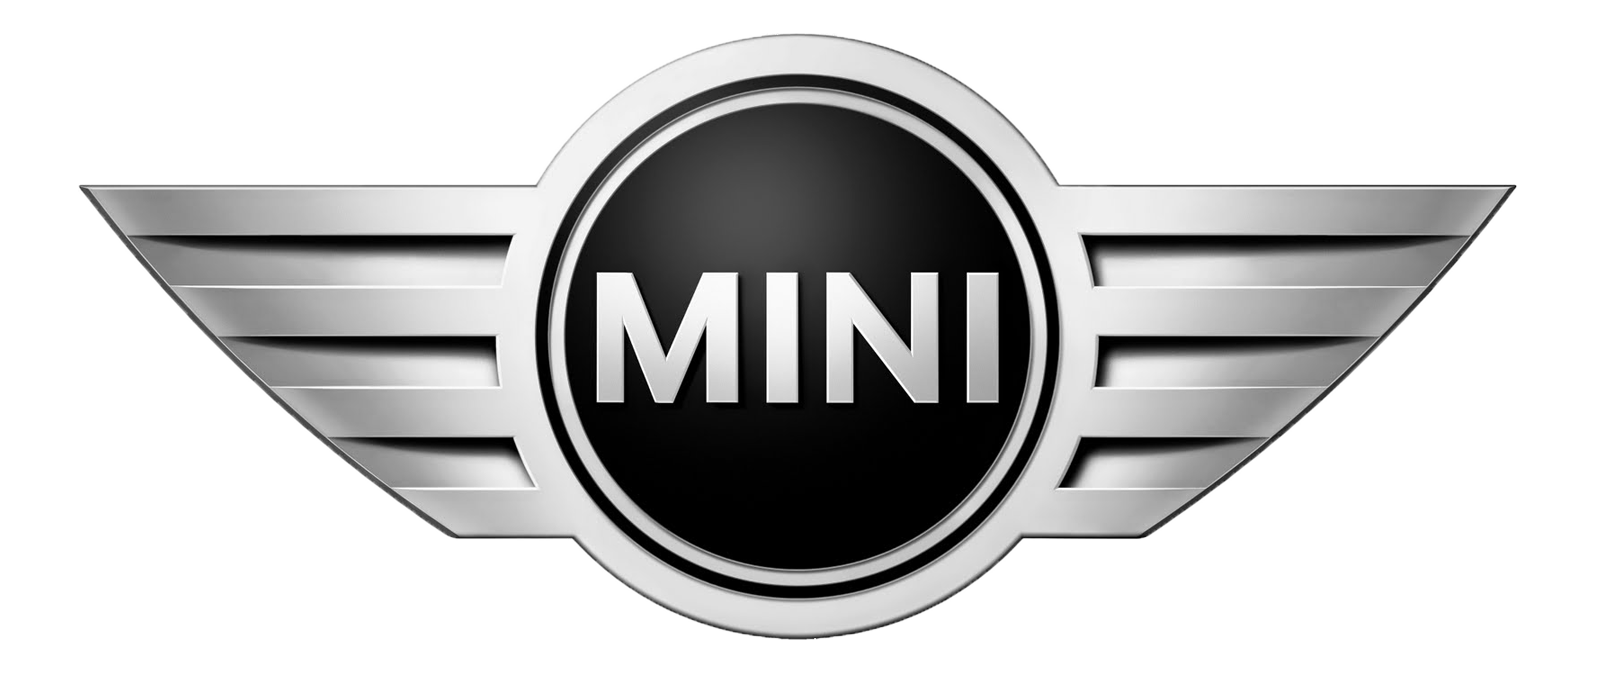 mini-one-2